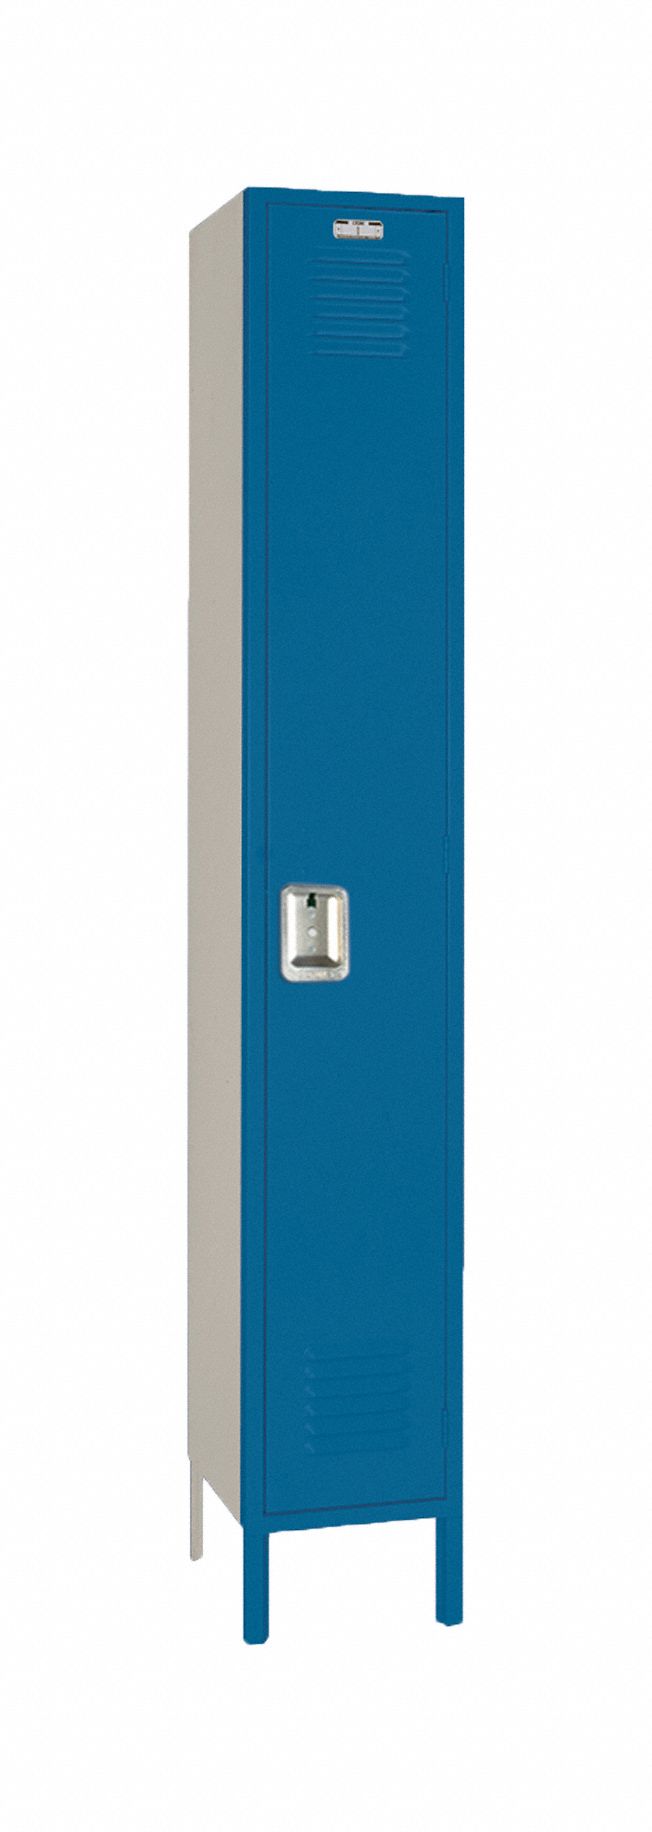 LYON Wardrobe Locker: 12 in x 12 in x 78 in, Louvered, 1 Tiers, 1 Units  Wide, Padlock Hasp, Blue